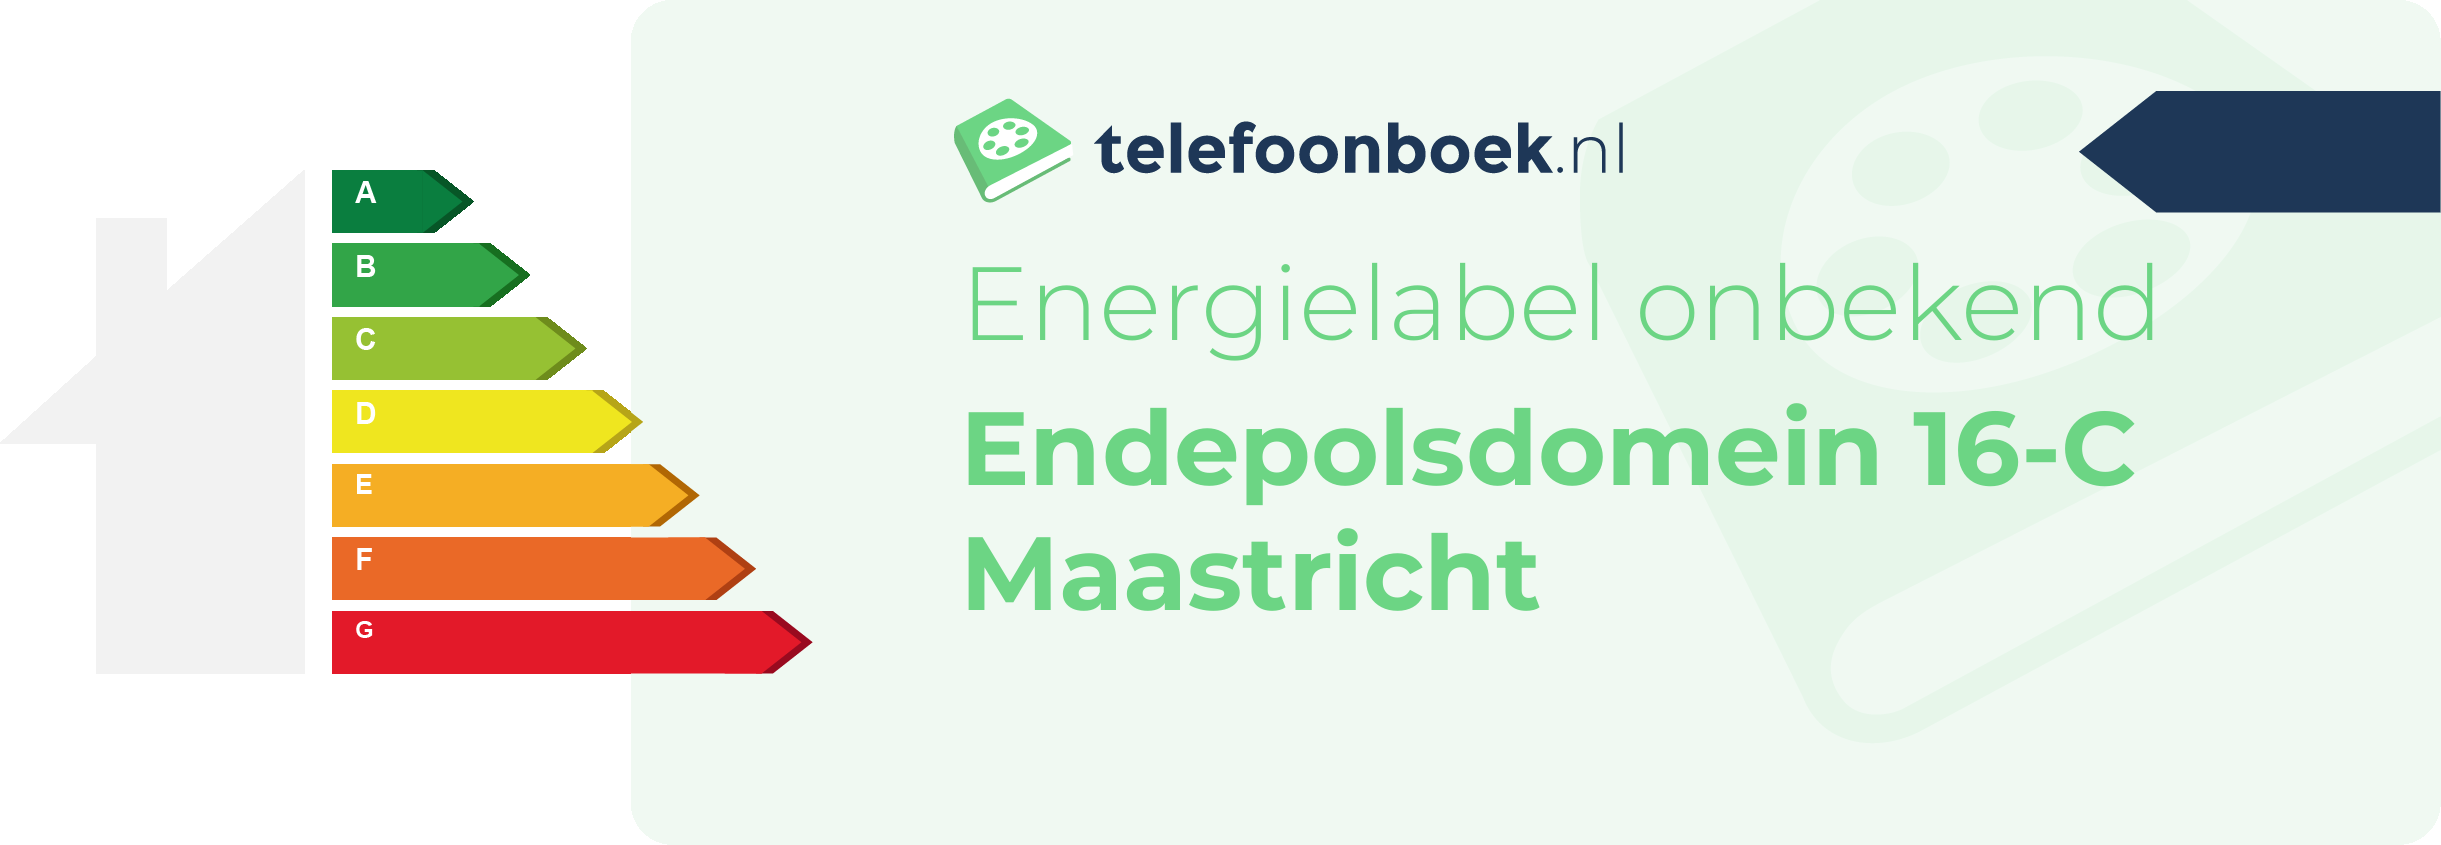 Energielabel Endepolsdomein 16-C Maastricht